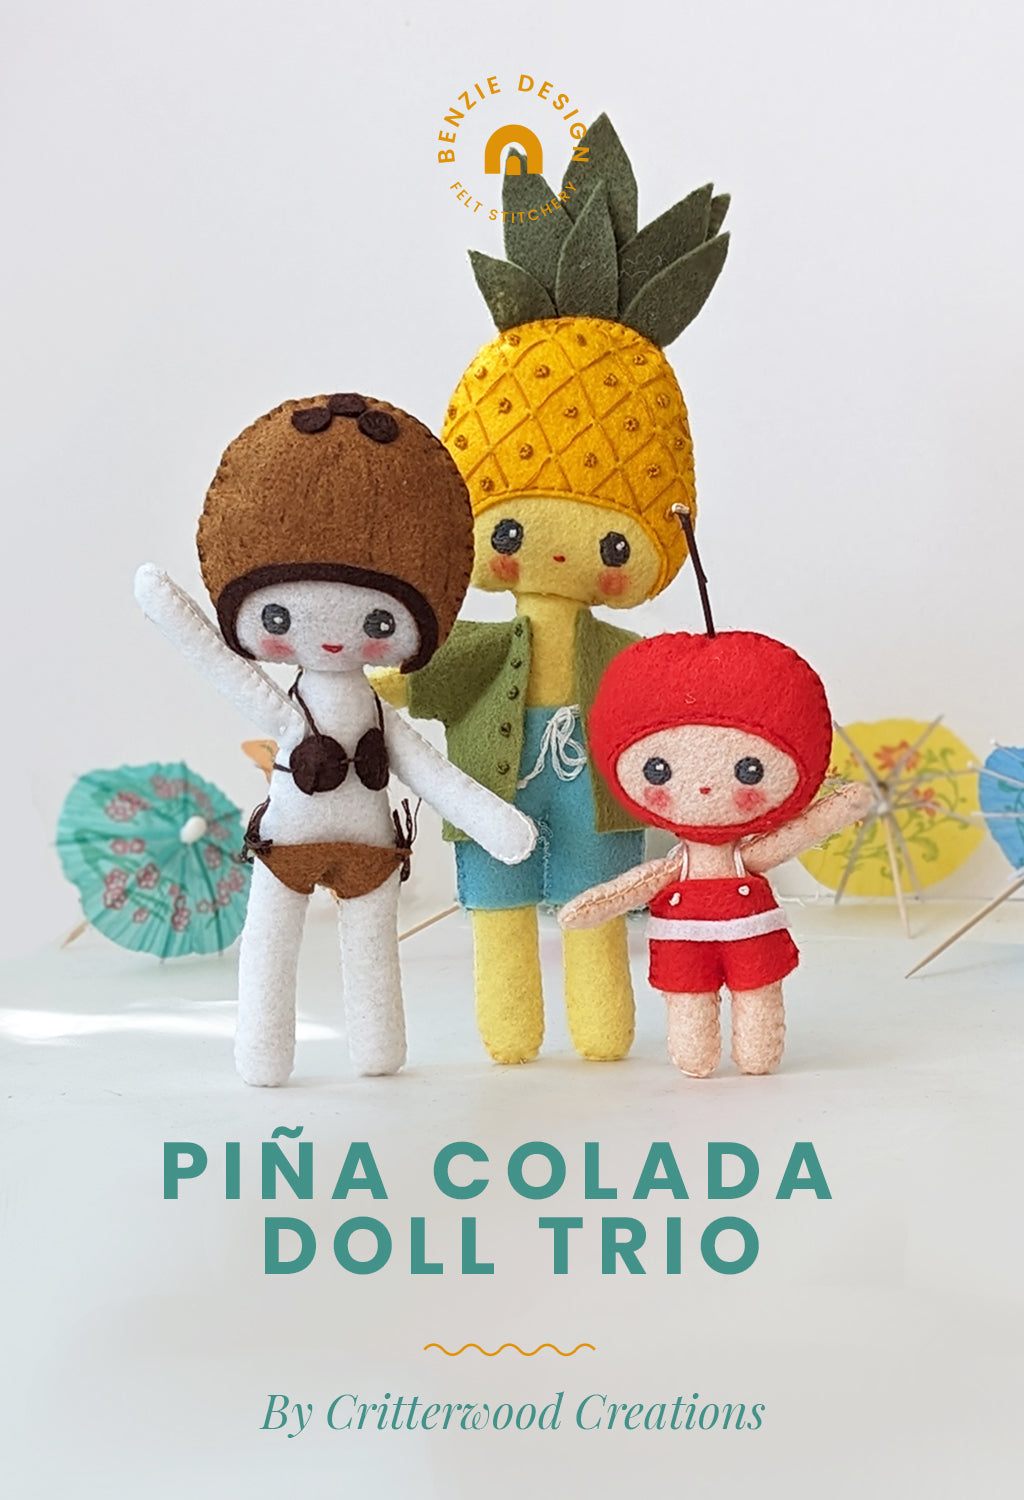 Piña Colada Felt Dolls Tutorial
– Benzie Design